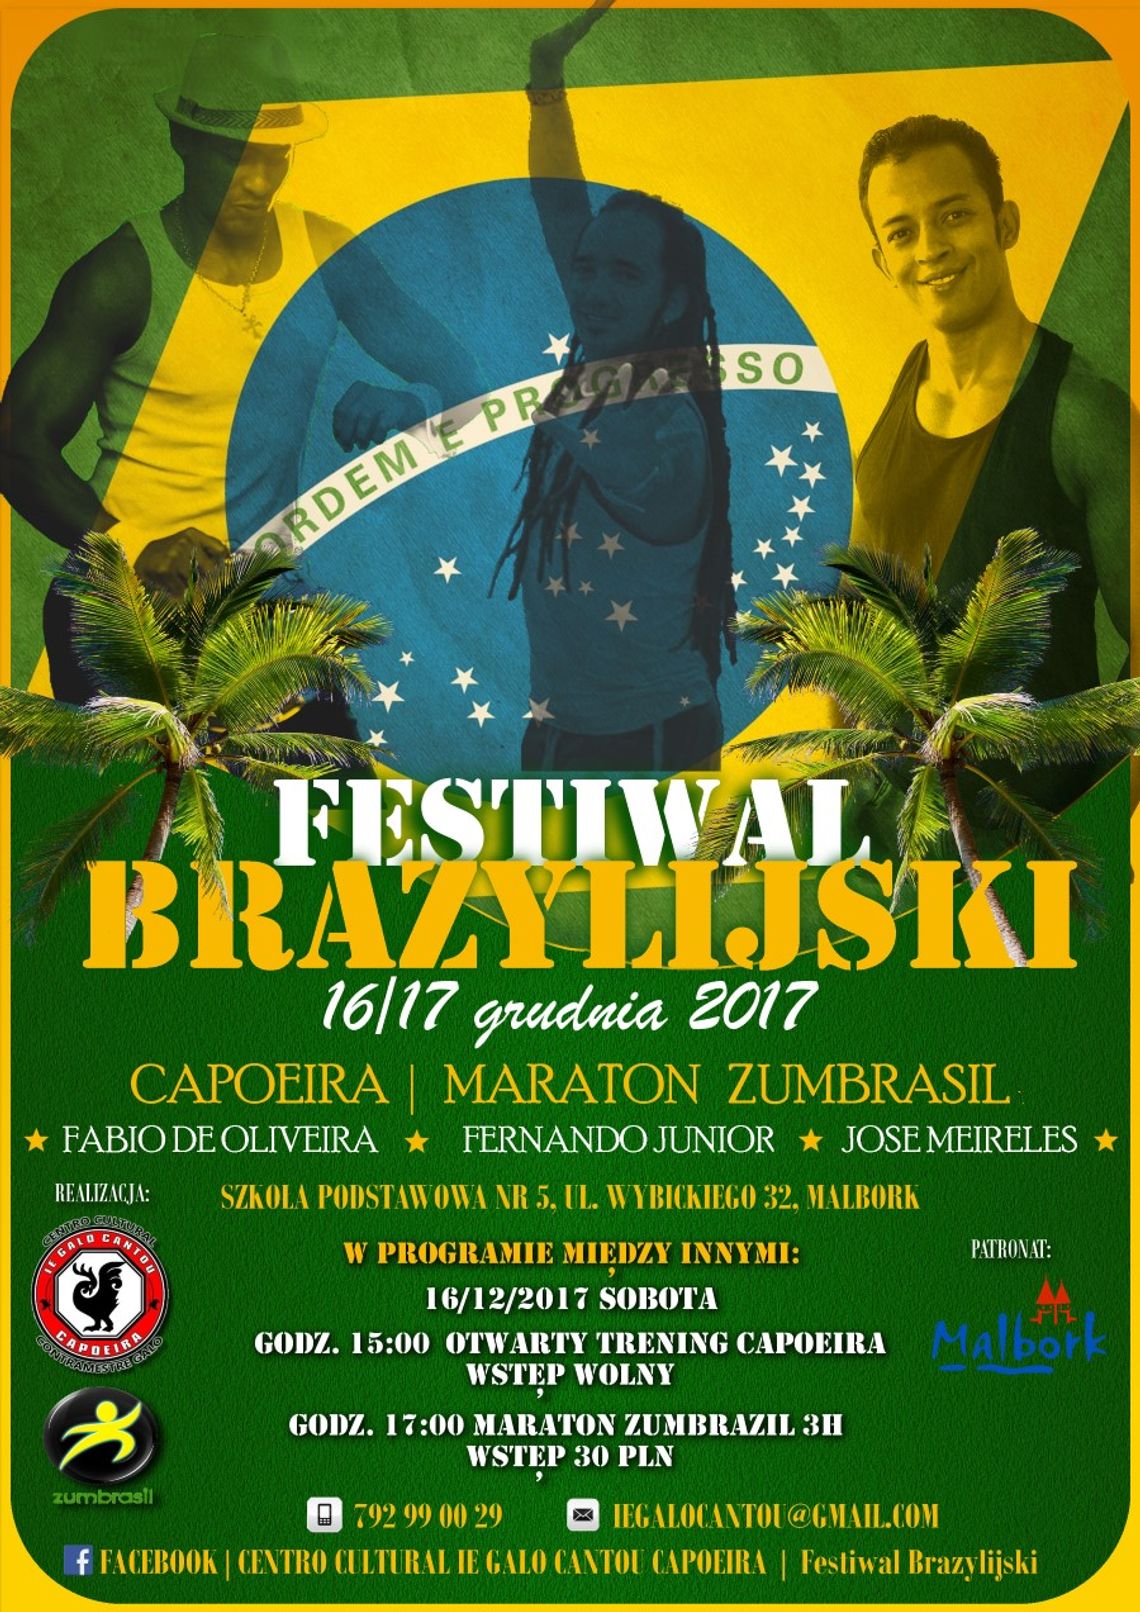 Festiwal Brazylijski - maraton Zumbrasil.